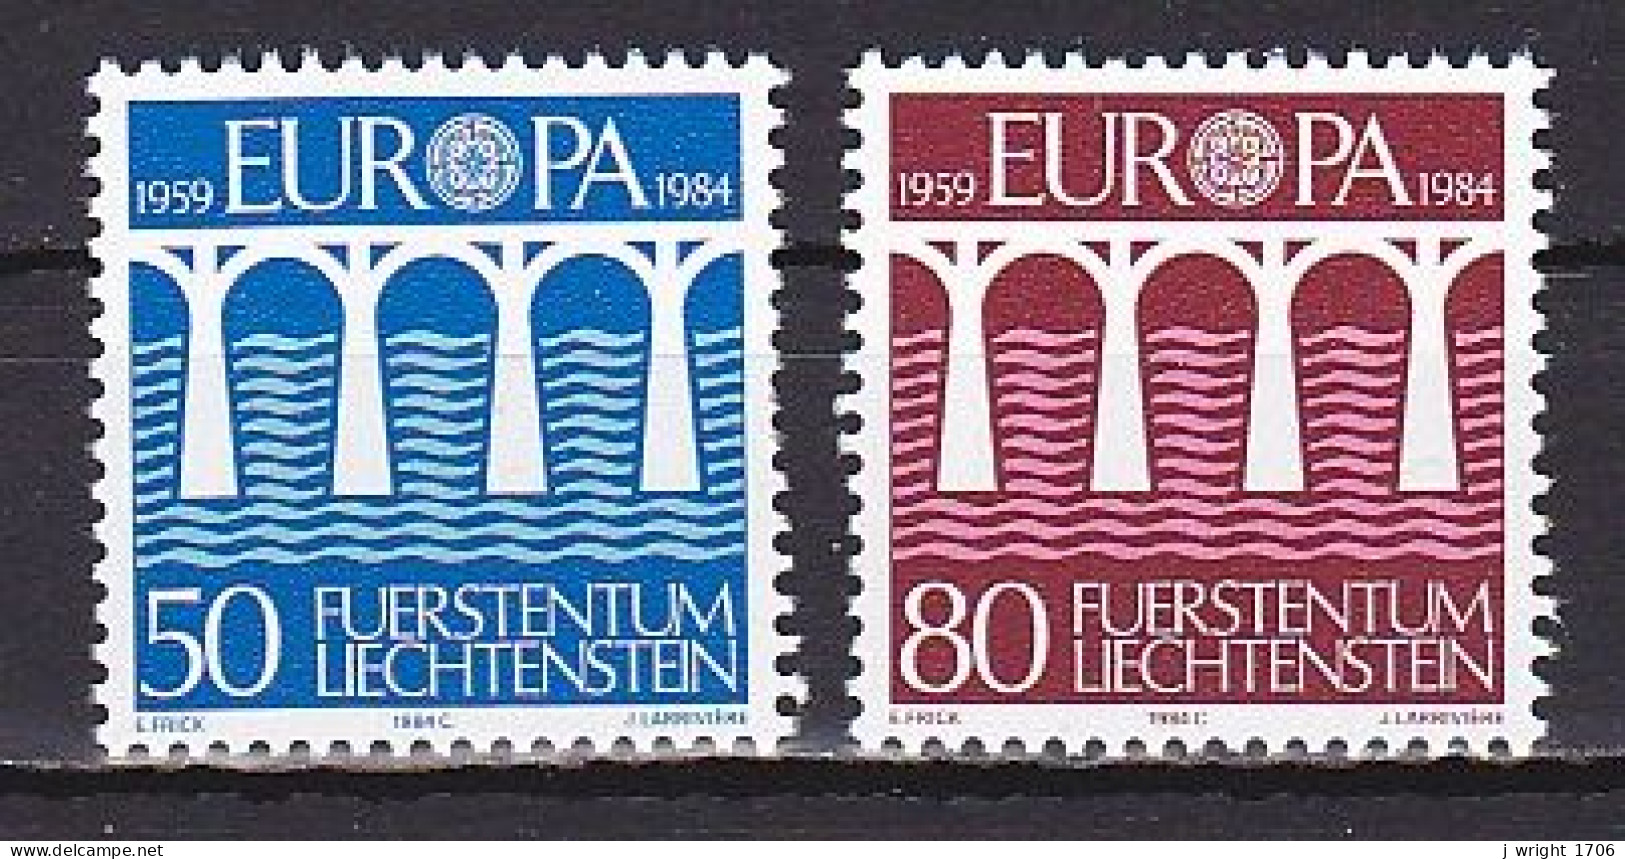 Liechtenstein, 1984, Europa CEPT, Set, MNH - Unused Stamps